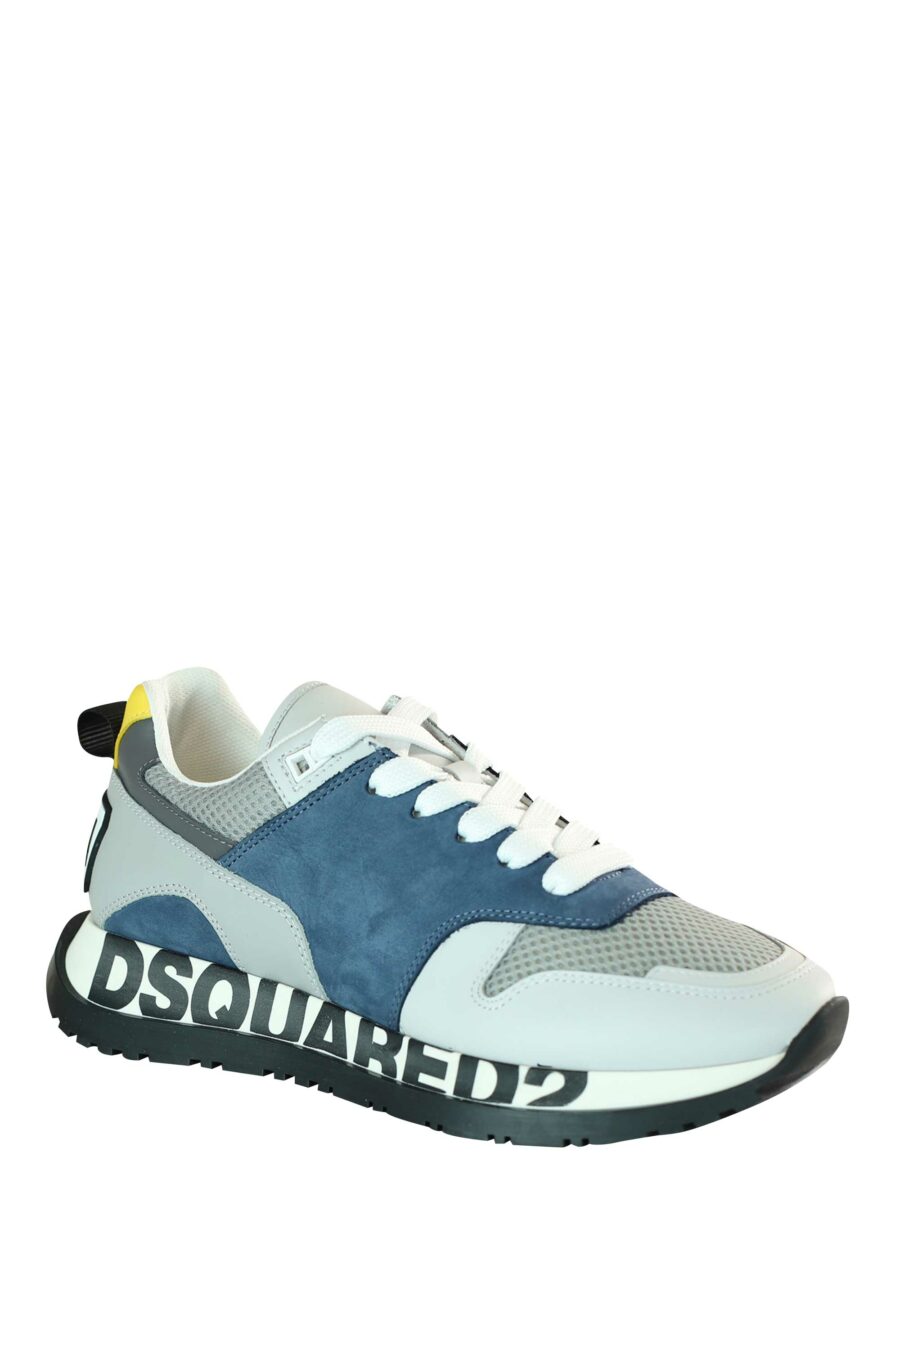 Zapatillas azules multicolor "running" con logo en suela - 8055777205549 2